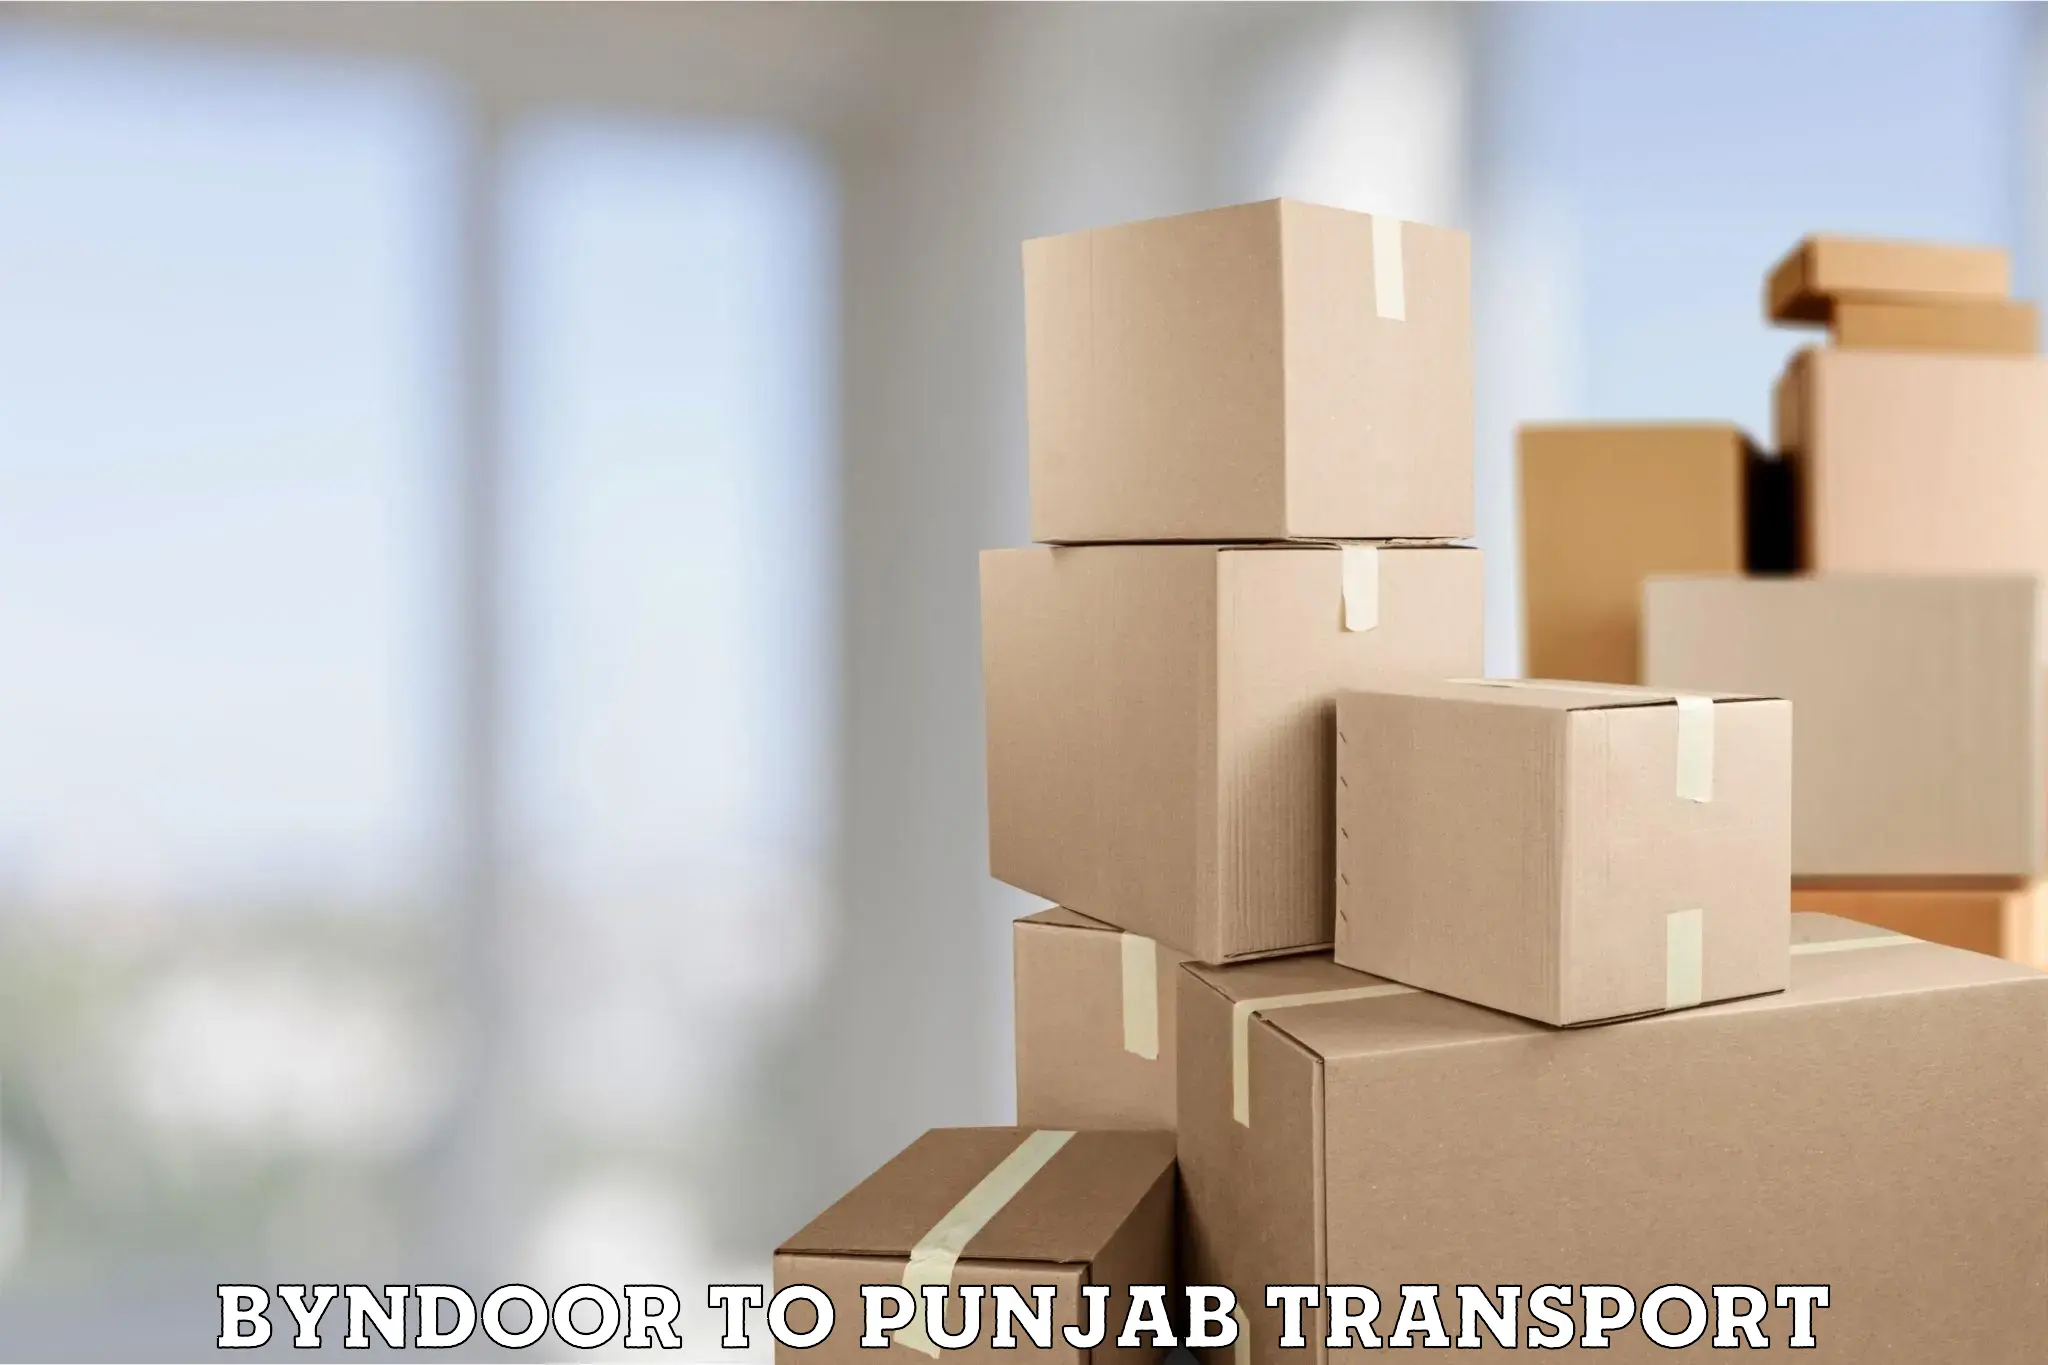 Furniture transport service Byndoor to Jalandhar